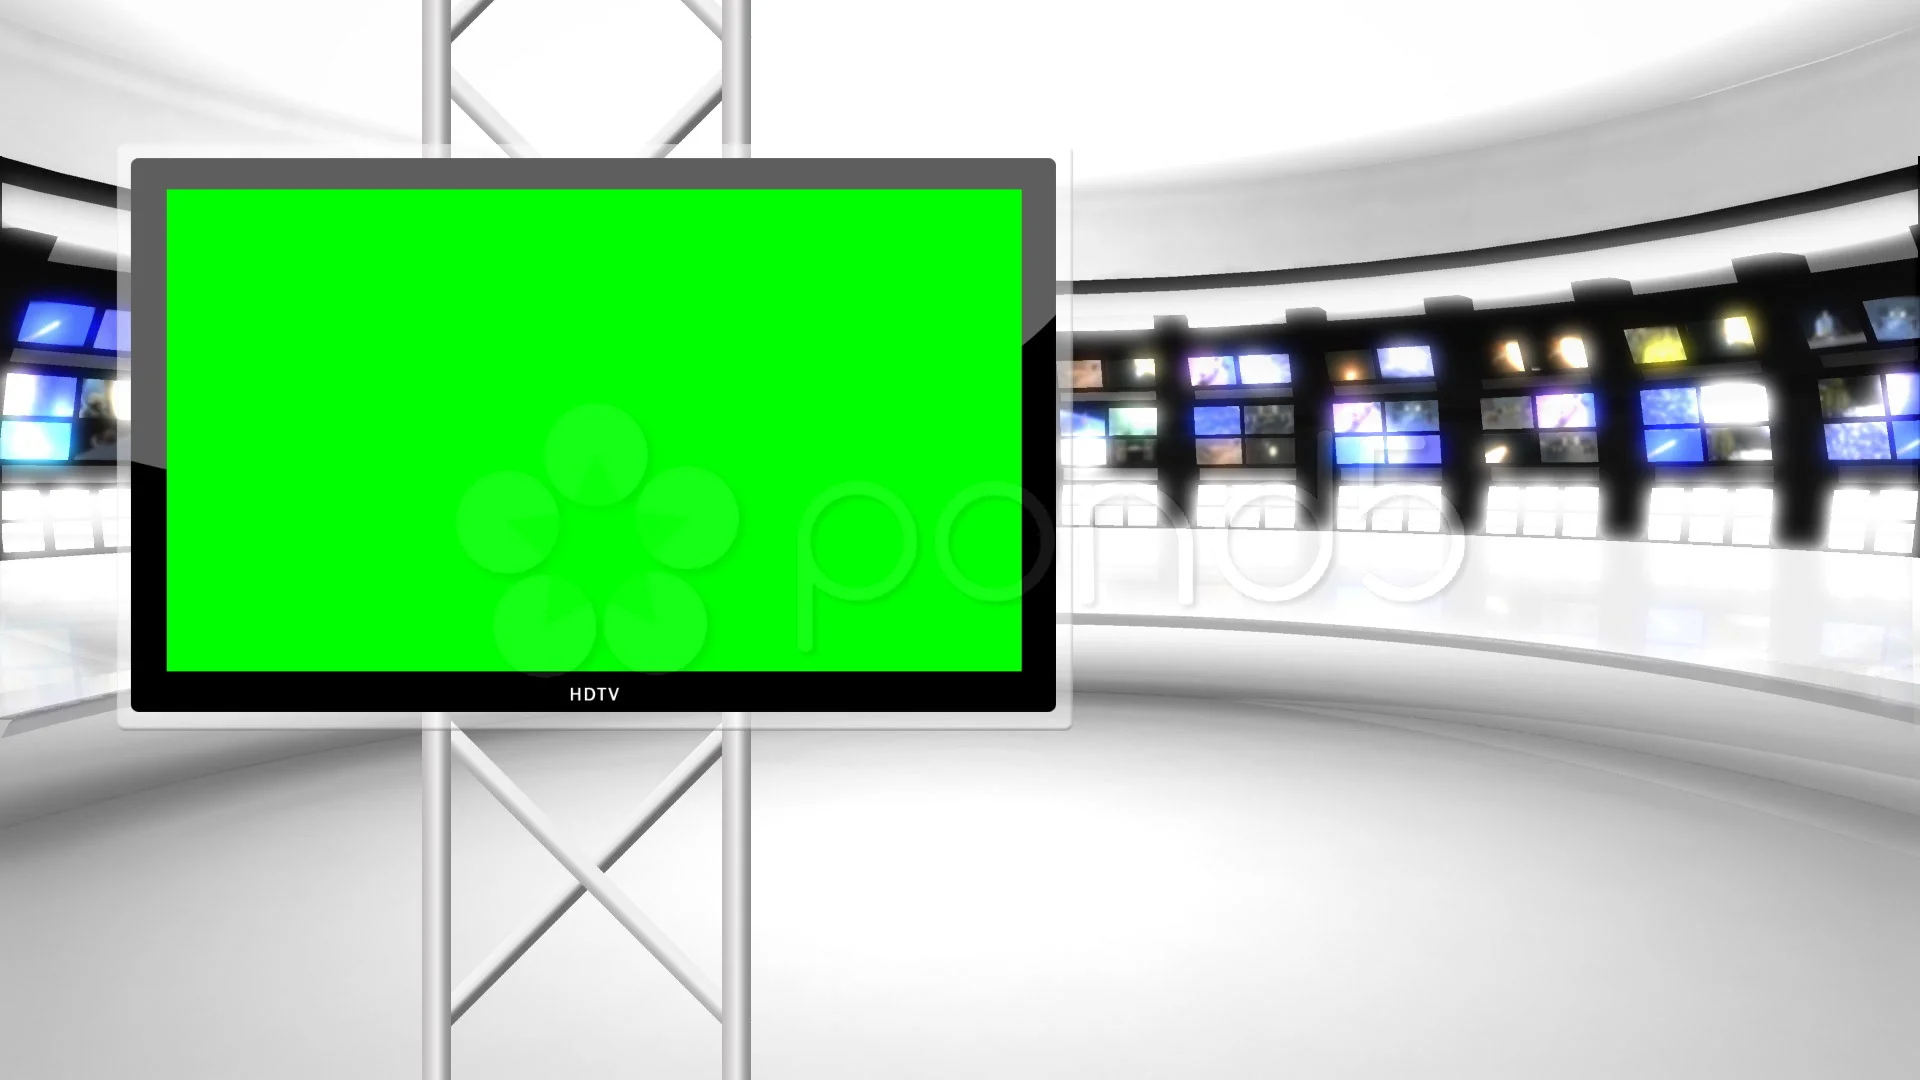 Studio Tin tức 9 với màn hình xanh ảo sẽ khiến bạn cảm thấy như đang sống trong một thế giới khác, với những bản tin chân thực và sắc nét nhất. Đừng bỏ lỡ cơ hội trải nghiệm công nghệ tiên tiến này.